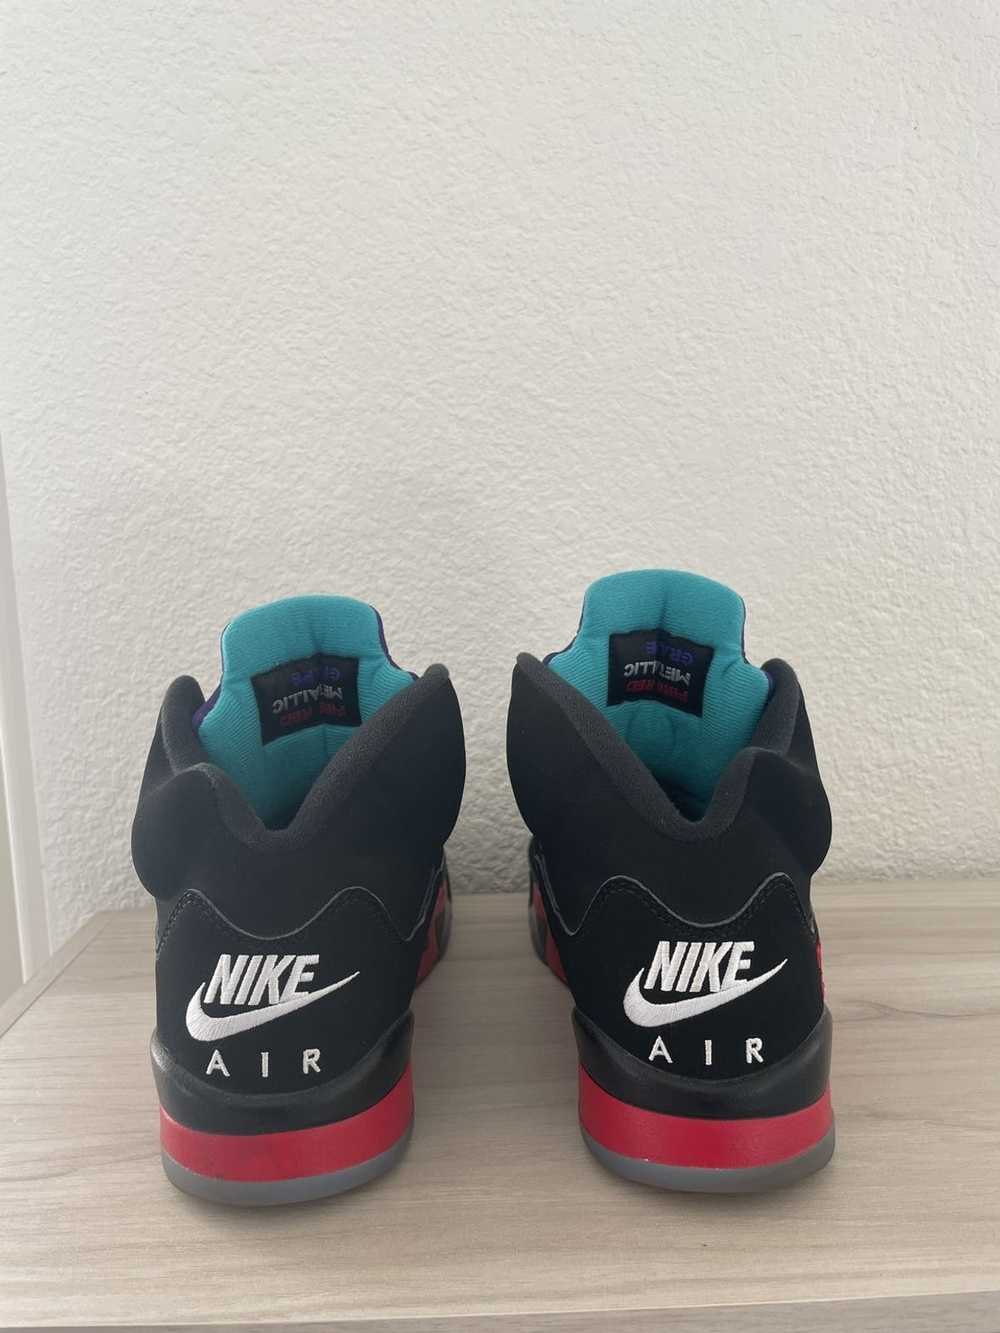 Jordan Brand × Nike Air Jordan 5 “Top 3” - image 5